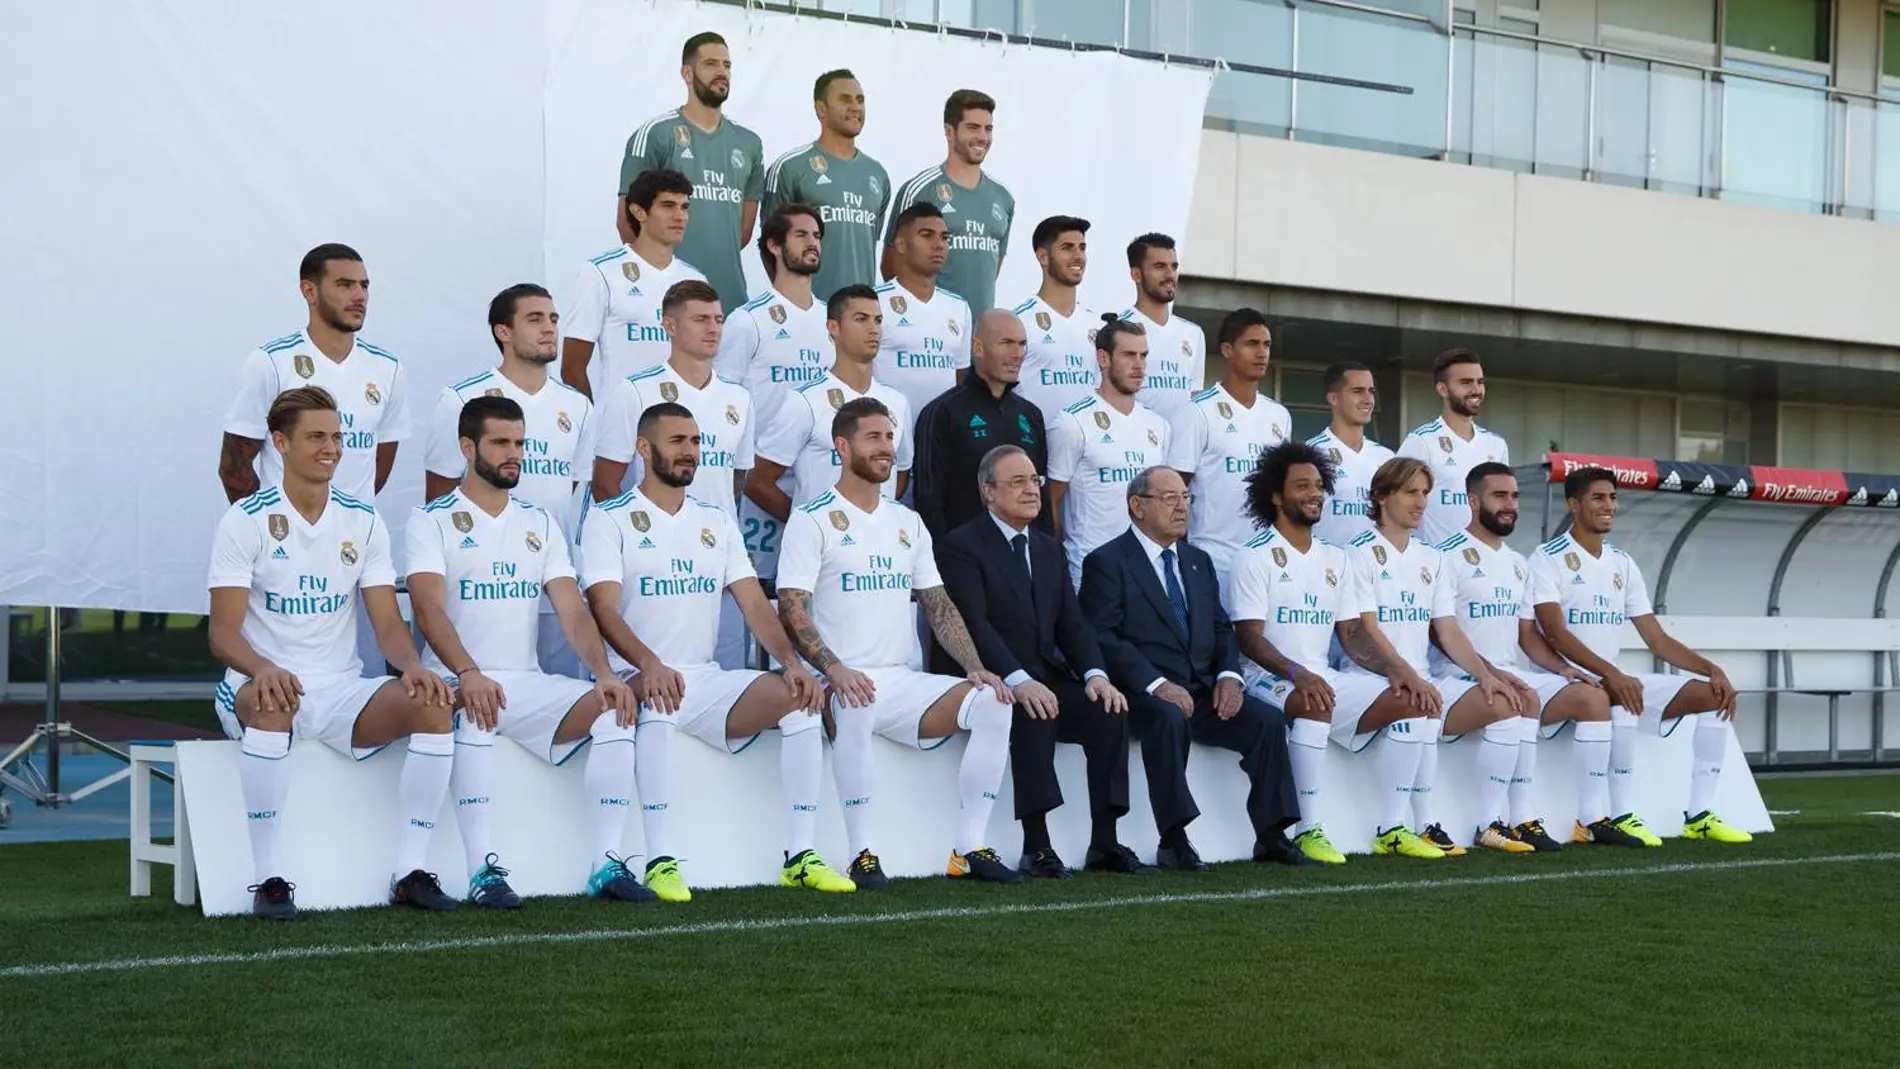 GALERÍA: El Real Madrid se hace la fotografía oficial de la plantilla  2017/18